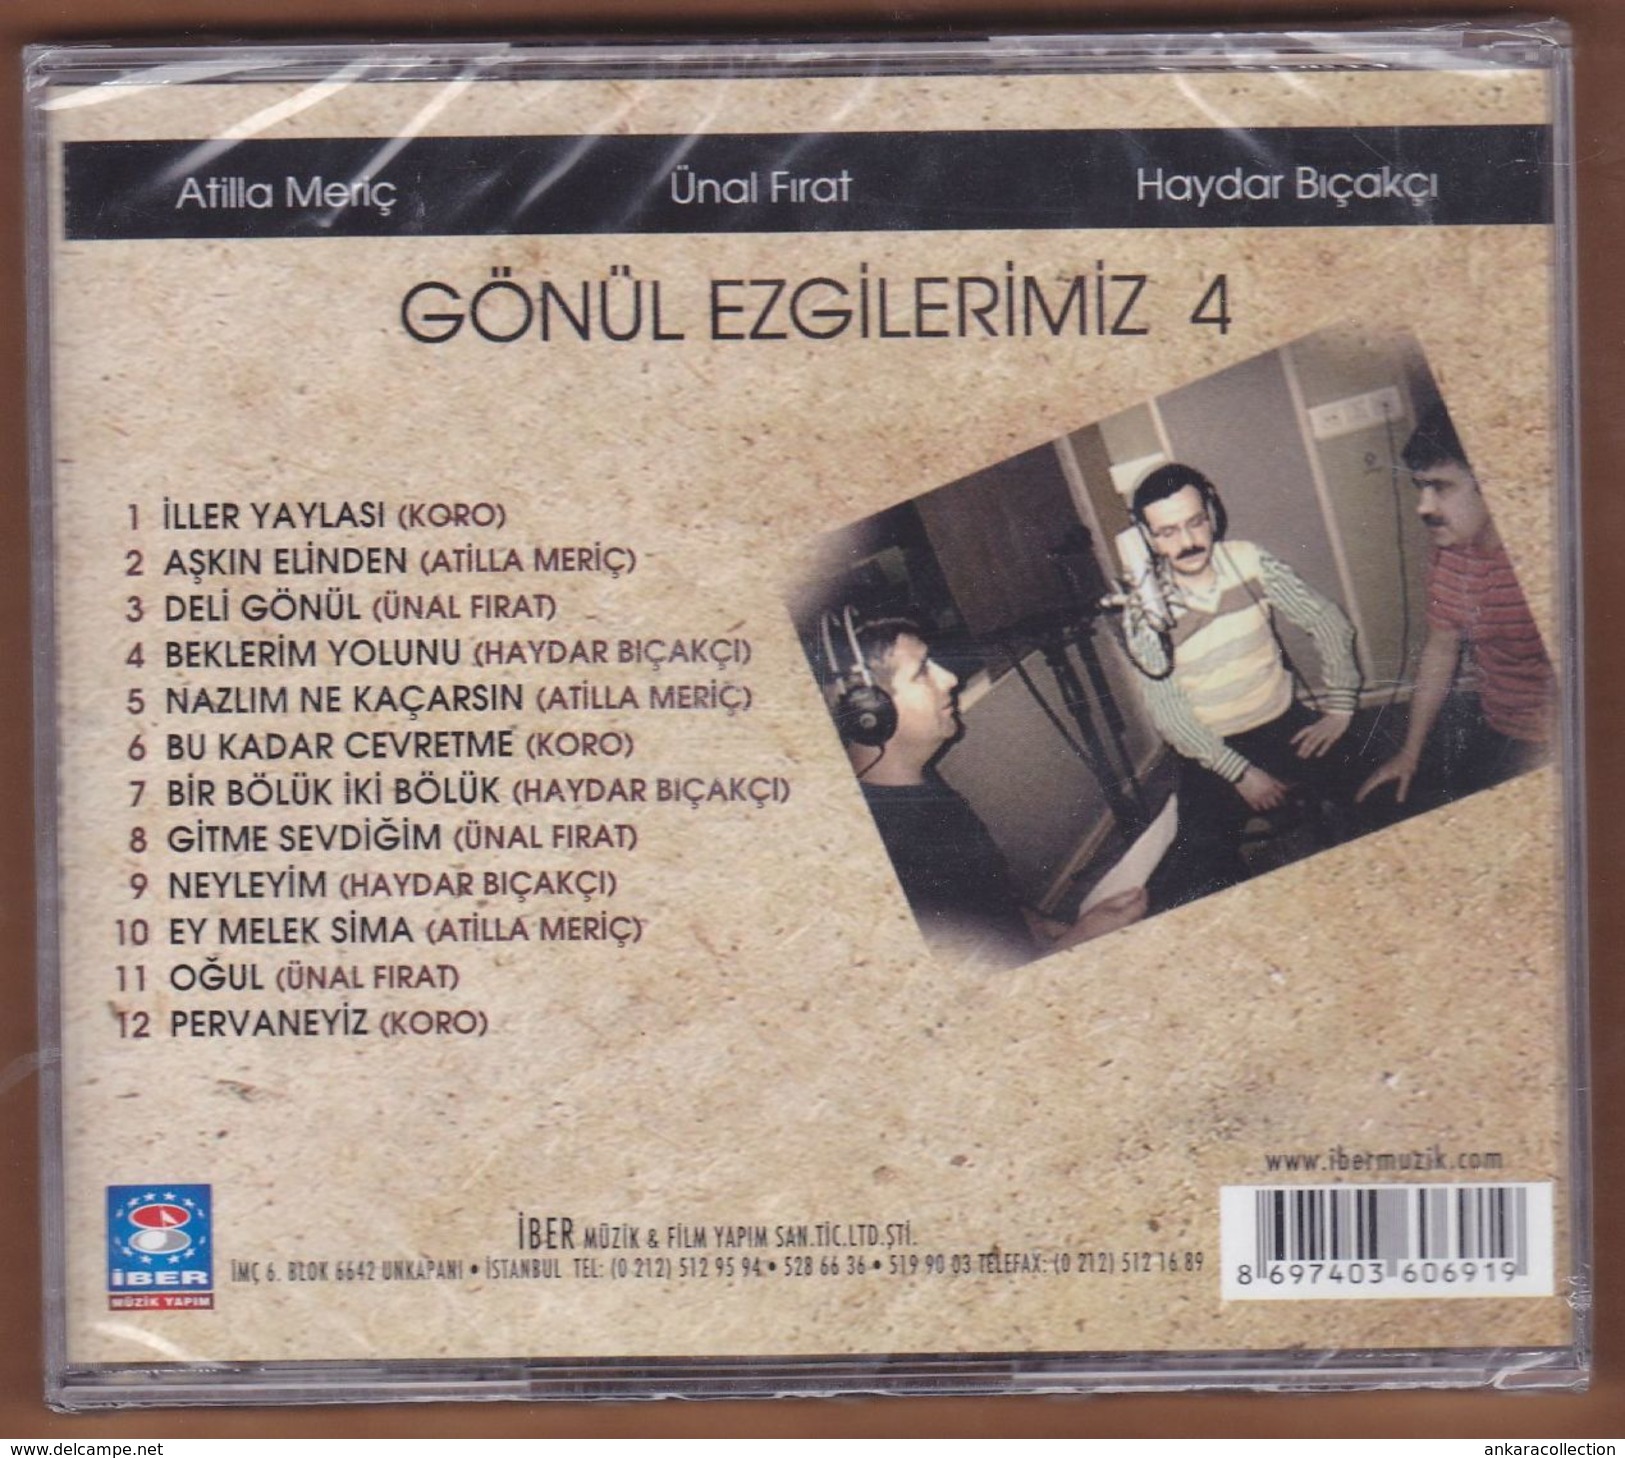 AC -  Atilla Meriç ünal Fırat Haydar Bıçakçı Gönül Ezgilerimiz 4 BRAND NEW TURKISH MUSIC CD - Wereldmuziek